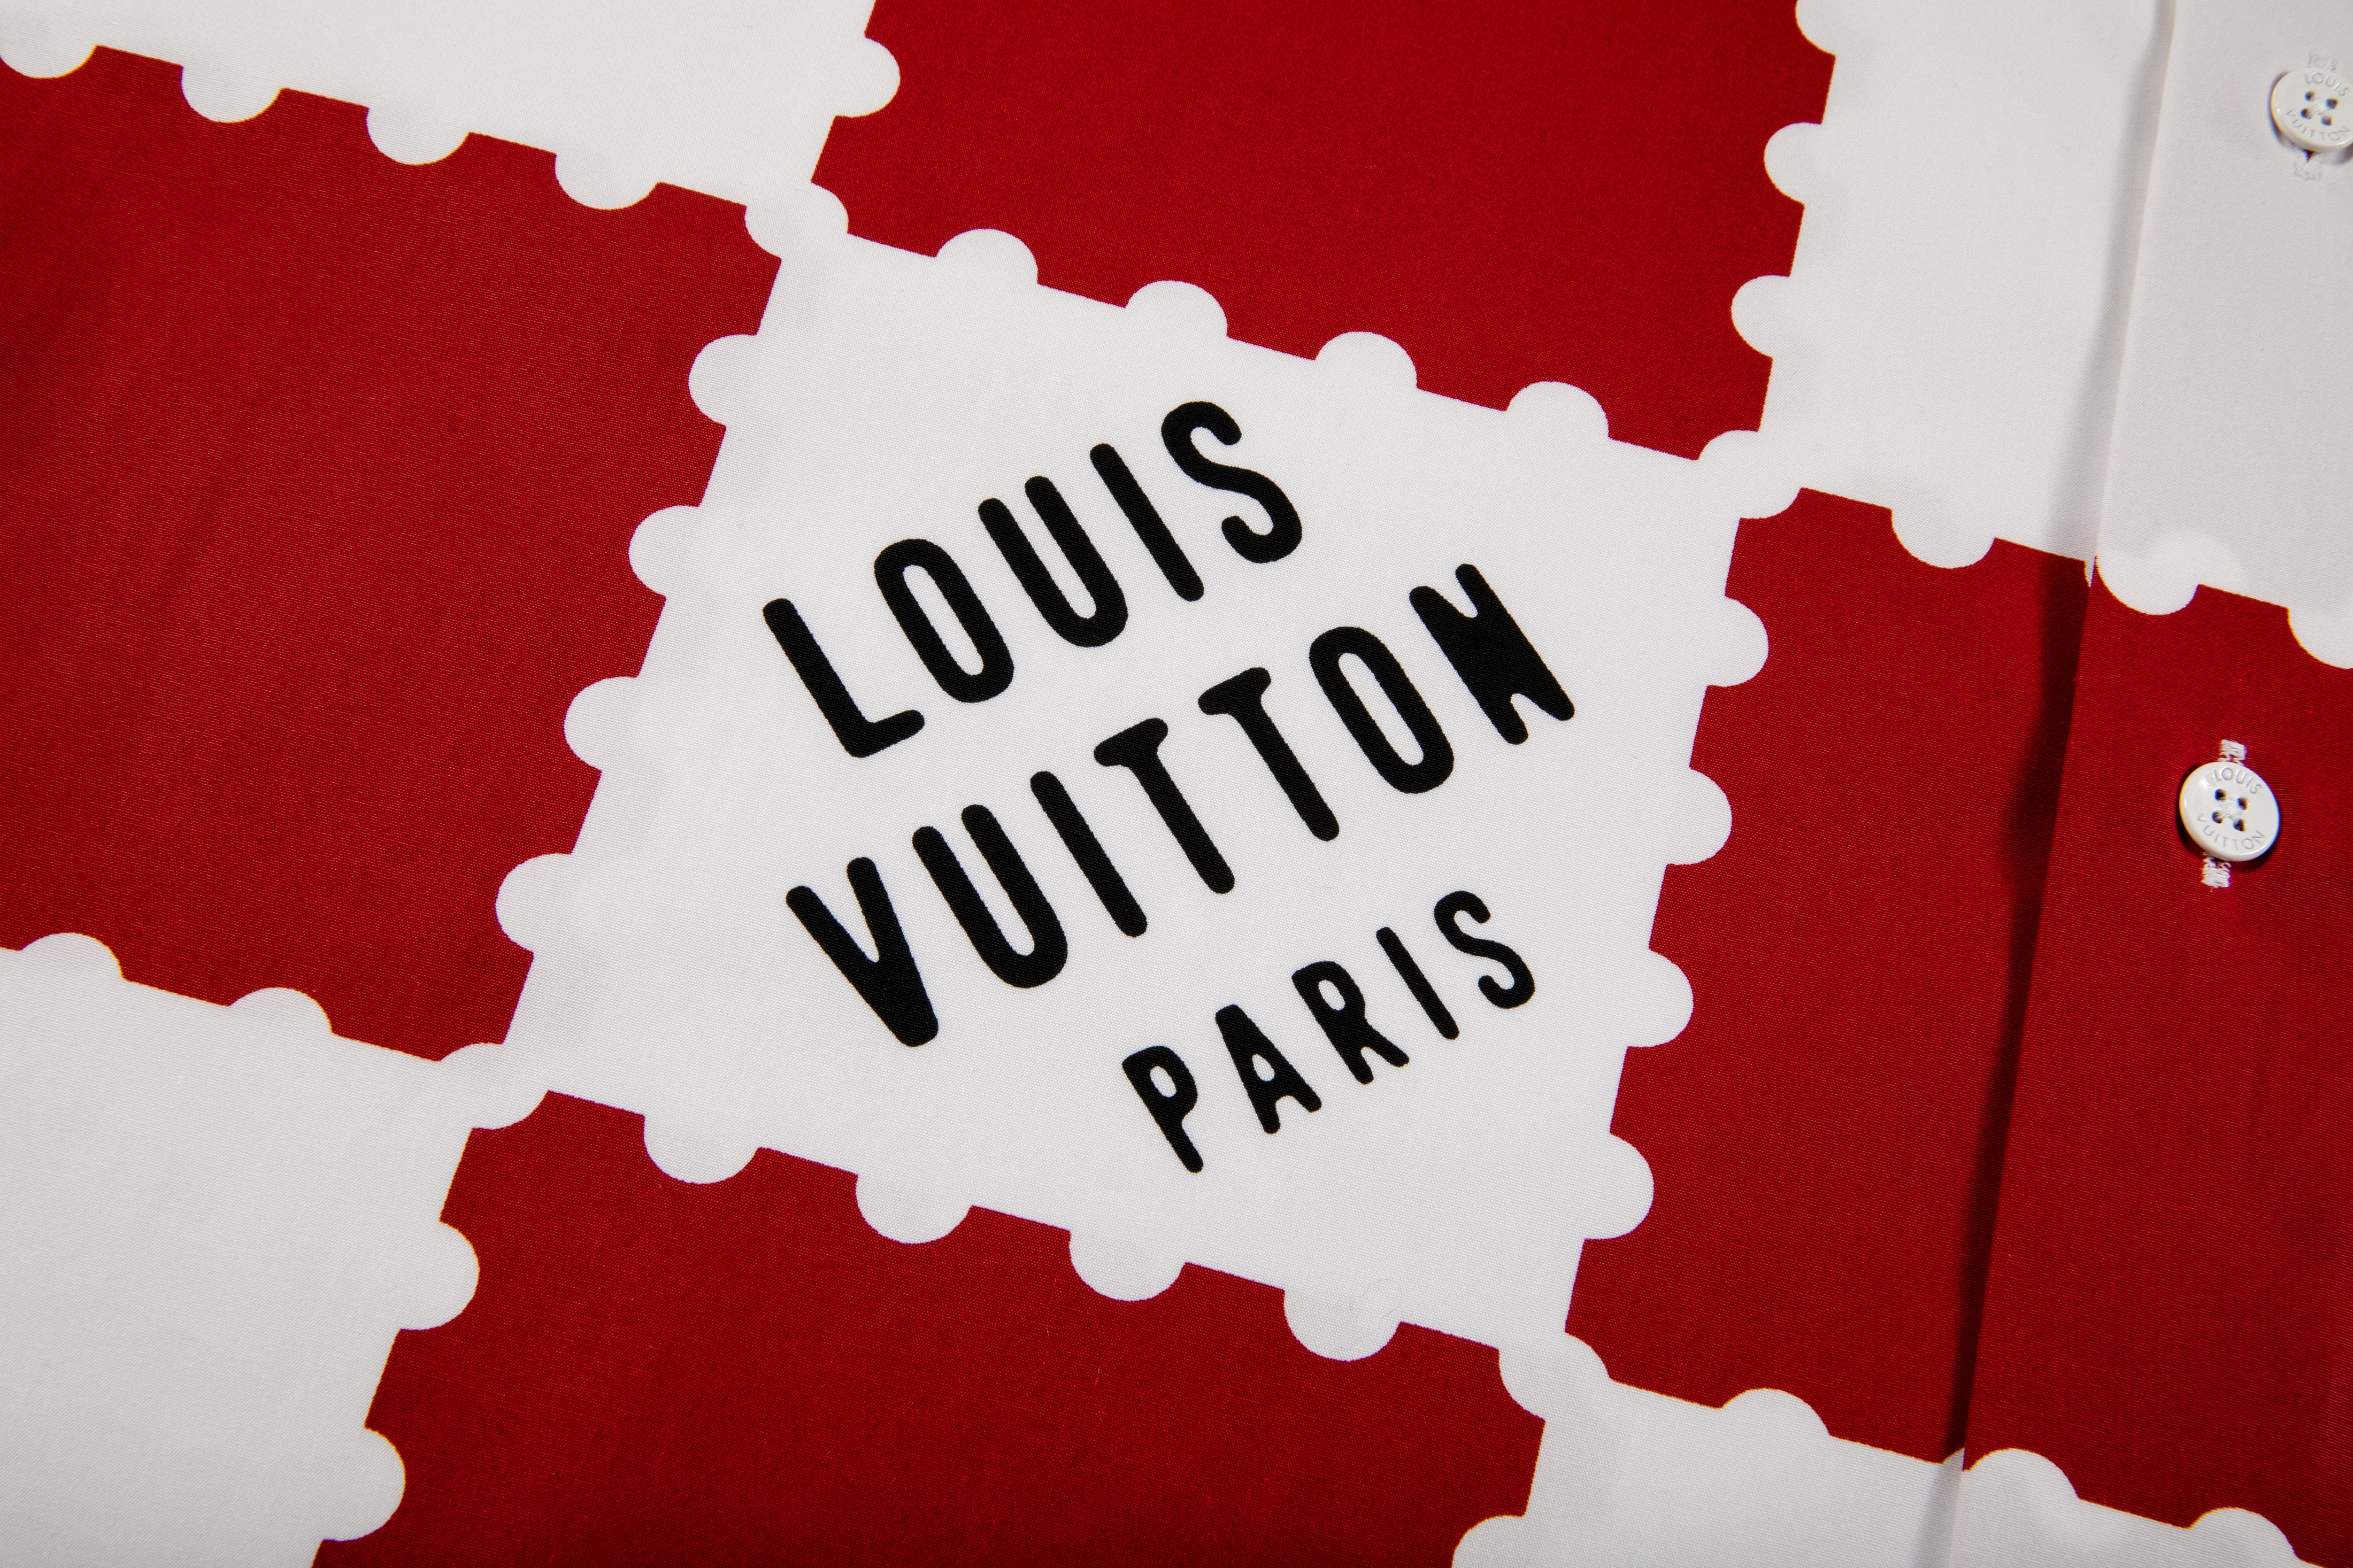 Louis Vuitton Louis Vuitton x Nigo Tee